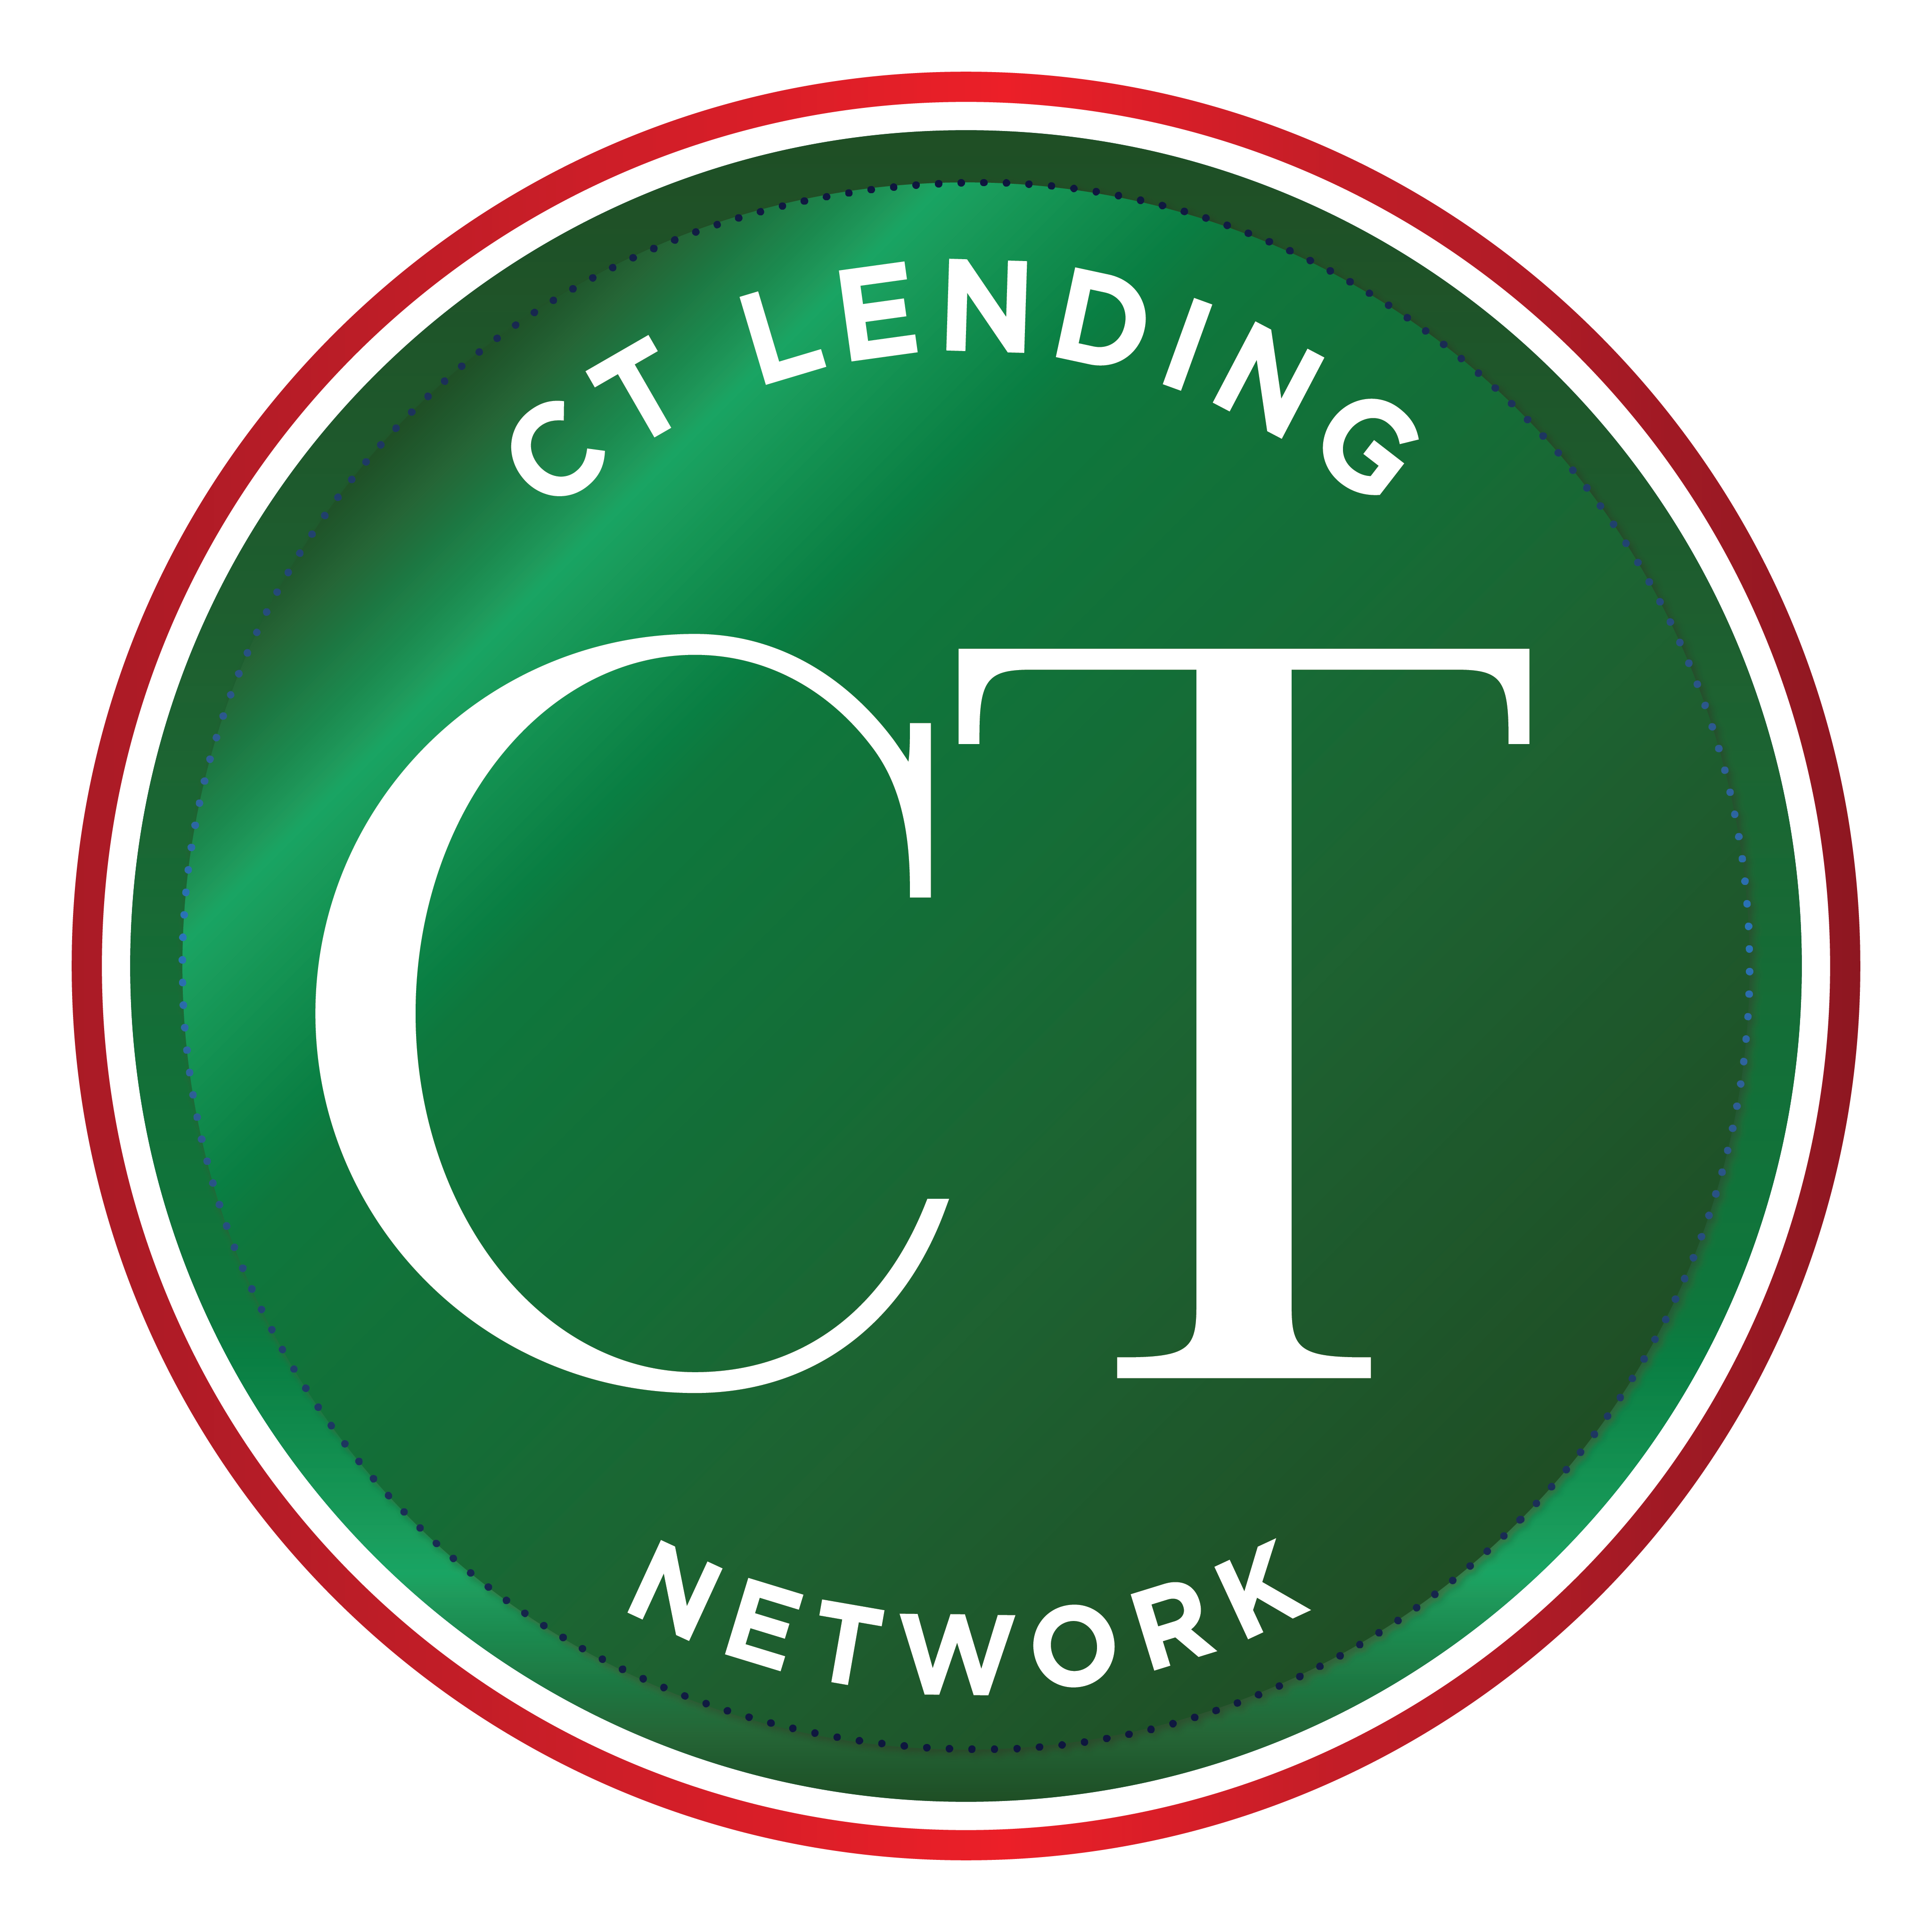 CT Lending Network